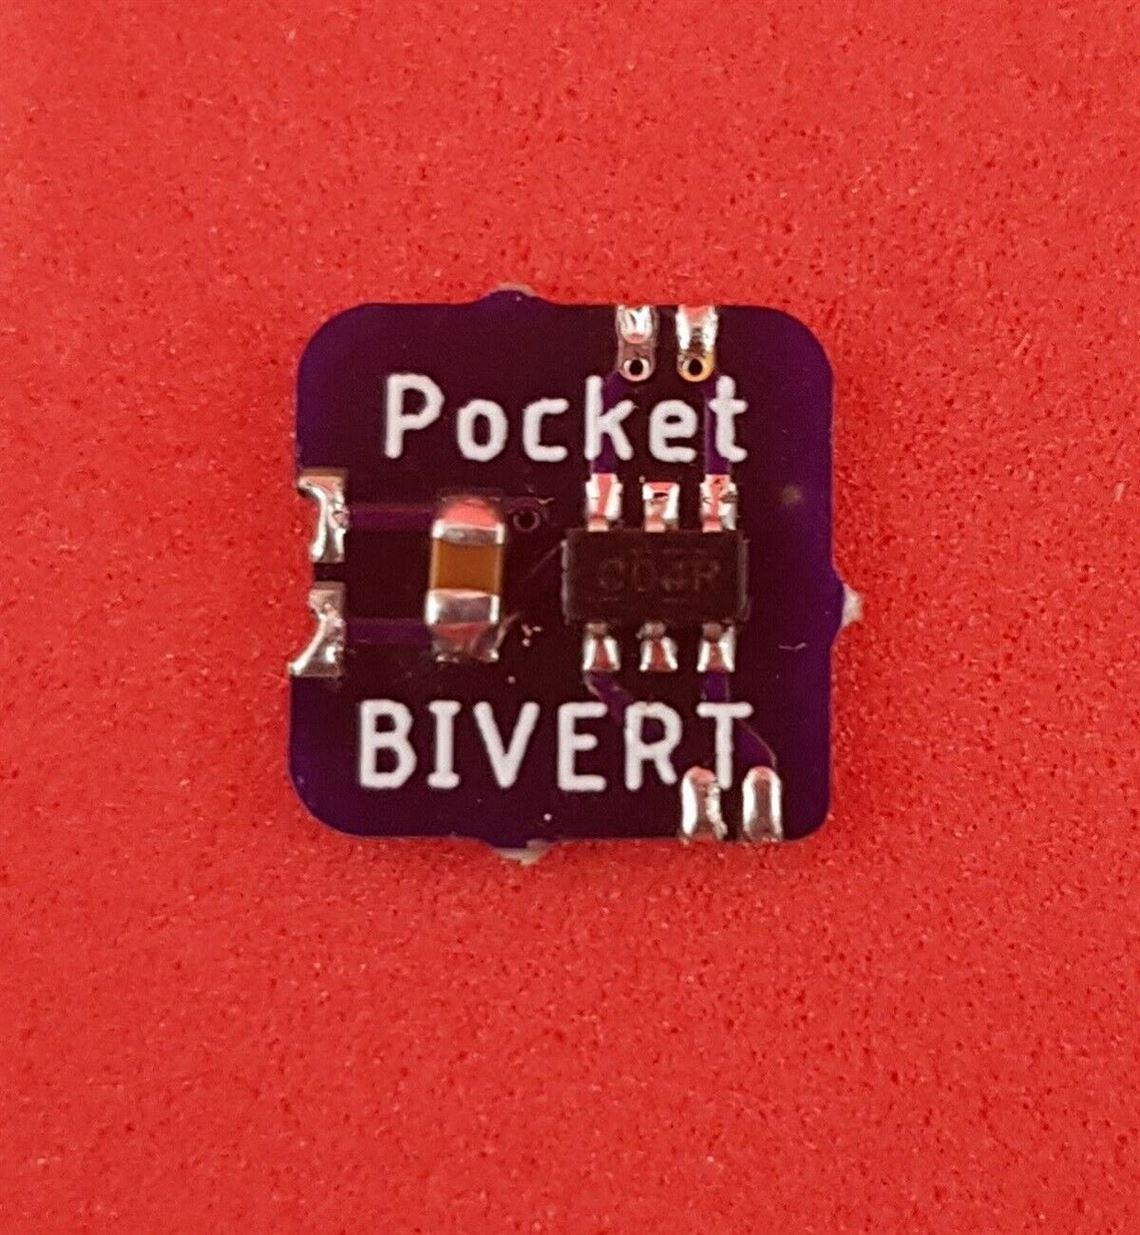 BIVERT CHIP for Pocket Gameboy Backlight Mod - **UK Stock**